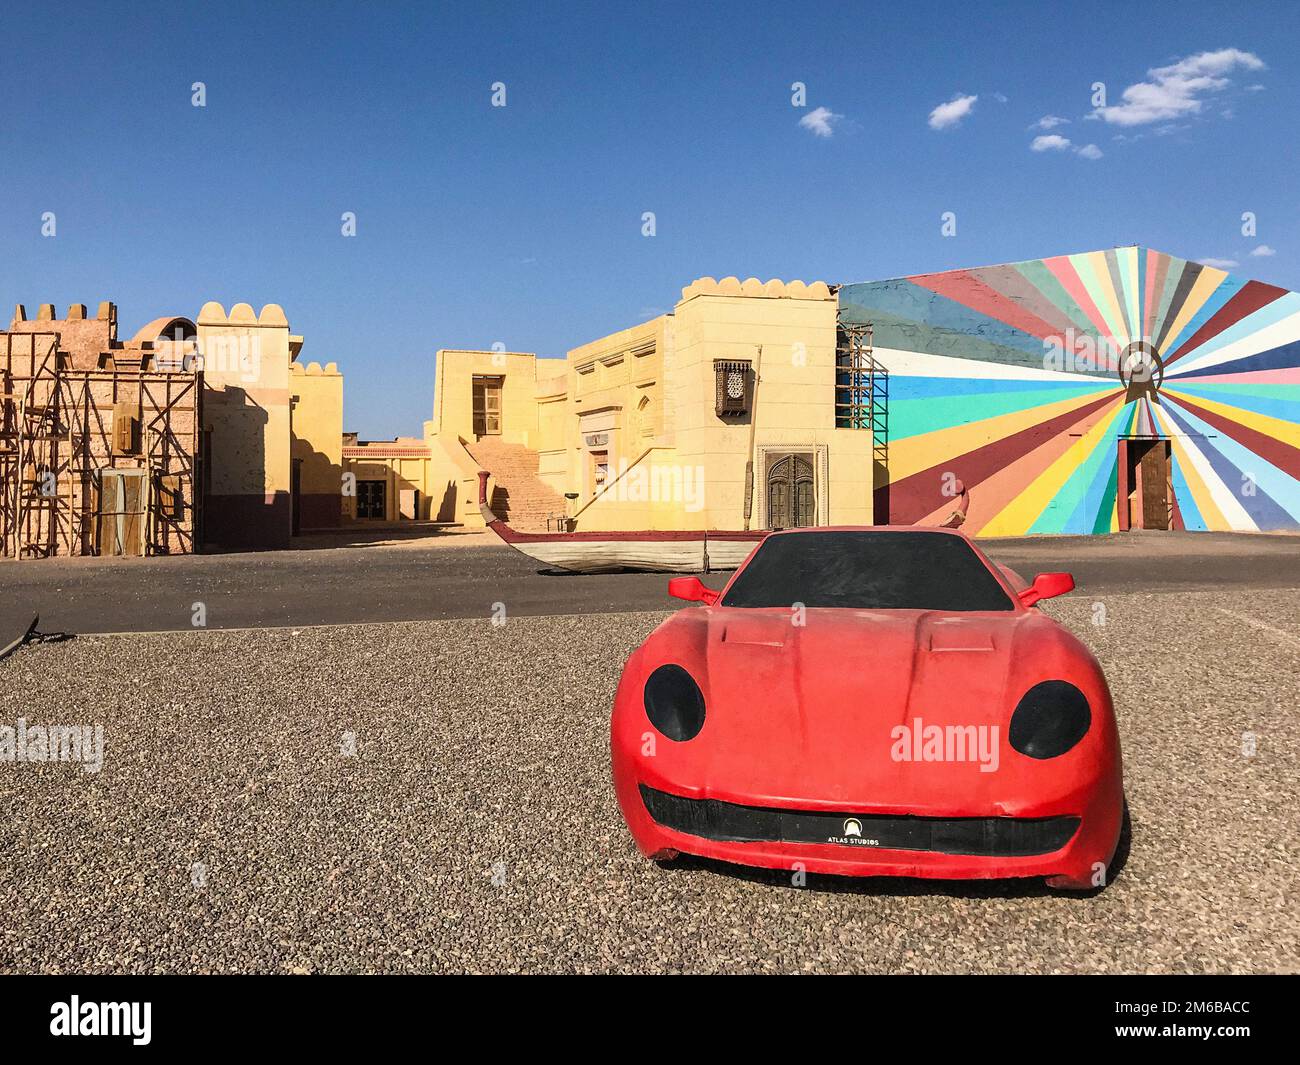 Le Maroc, Ouarzazate, Atlas Corporation Studios Banque D'Images